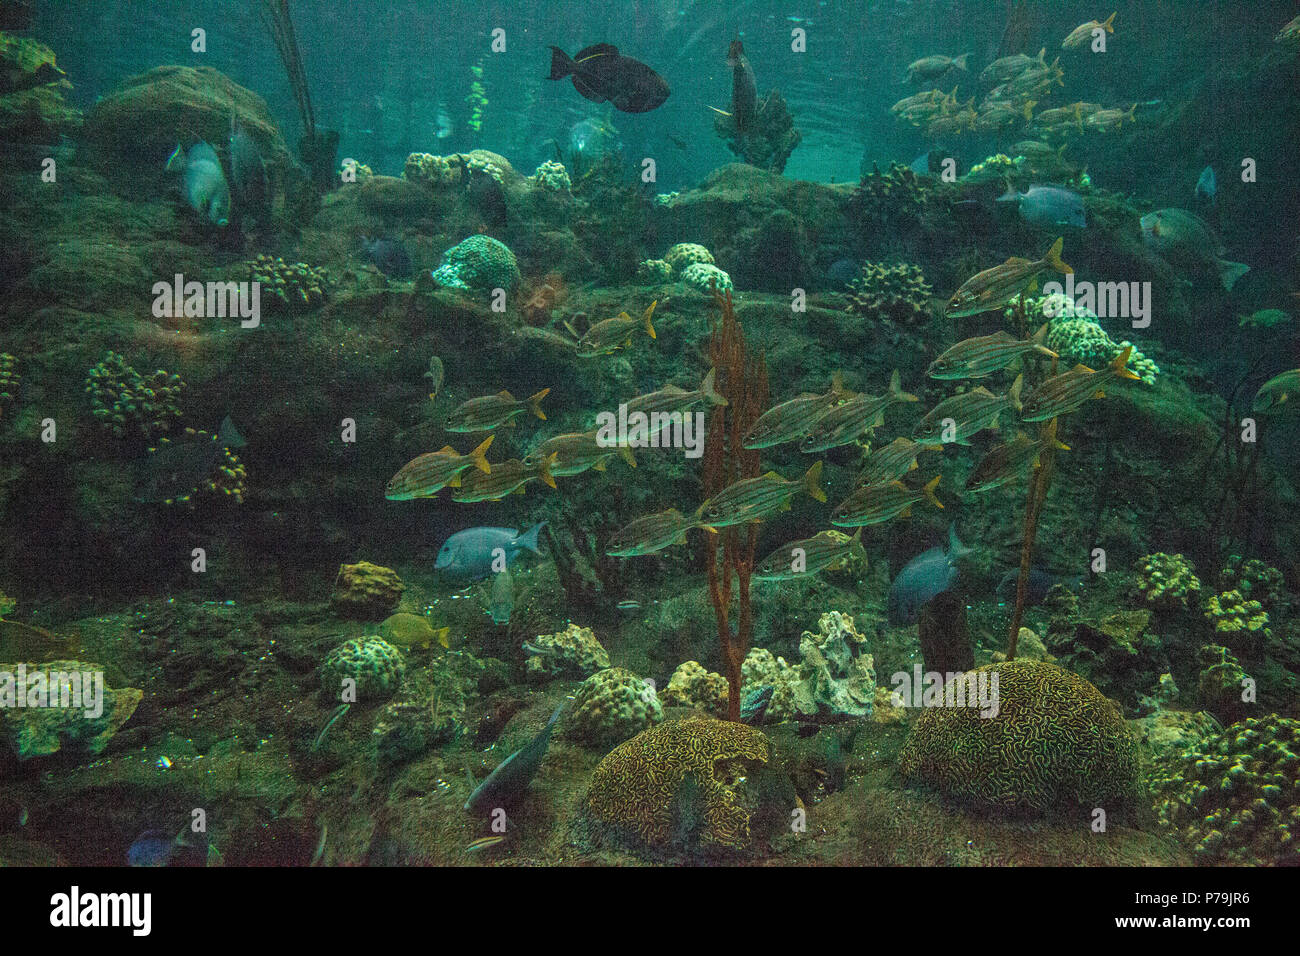 Schule der blau gestreiften grunzen Fische Haemulon sciurus Schwimmen im Kreise entlang einem Korallenriff. Stockfoto